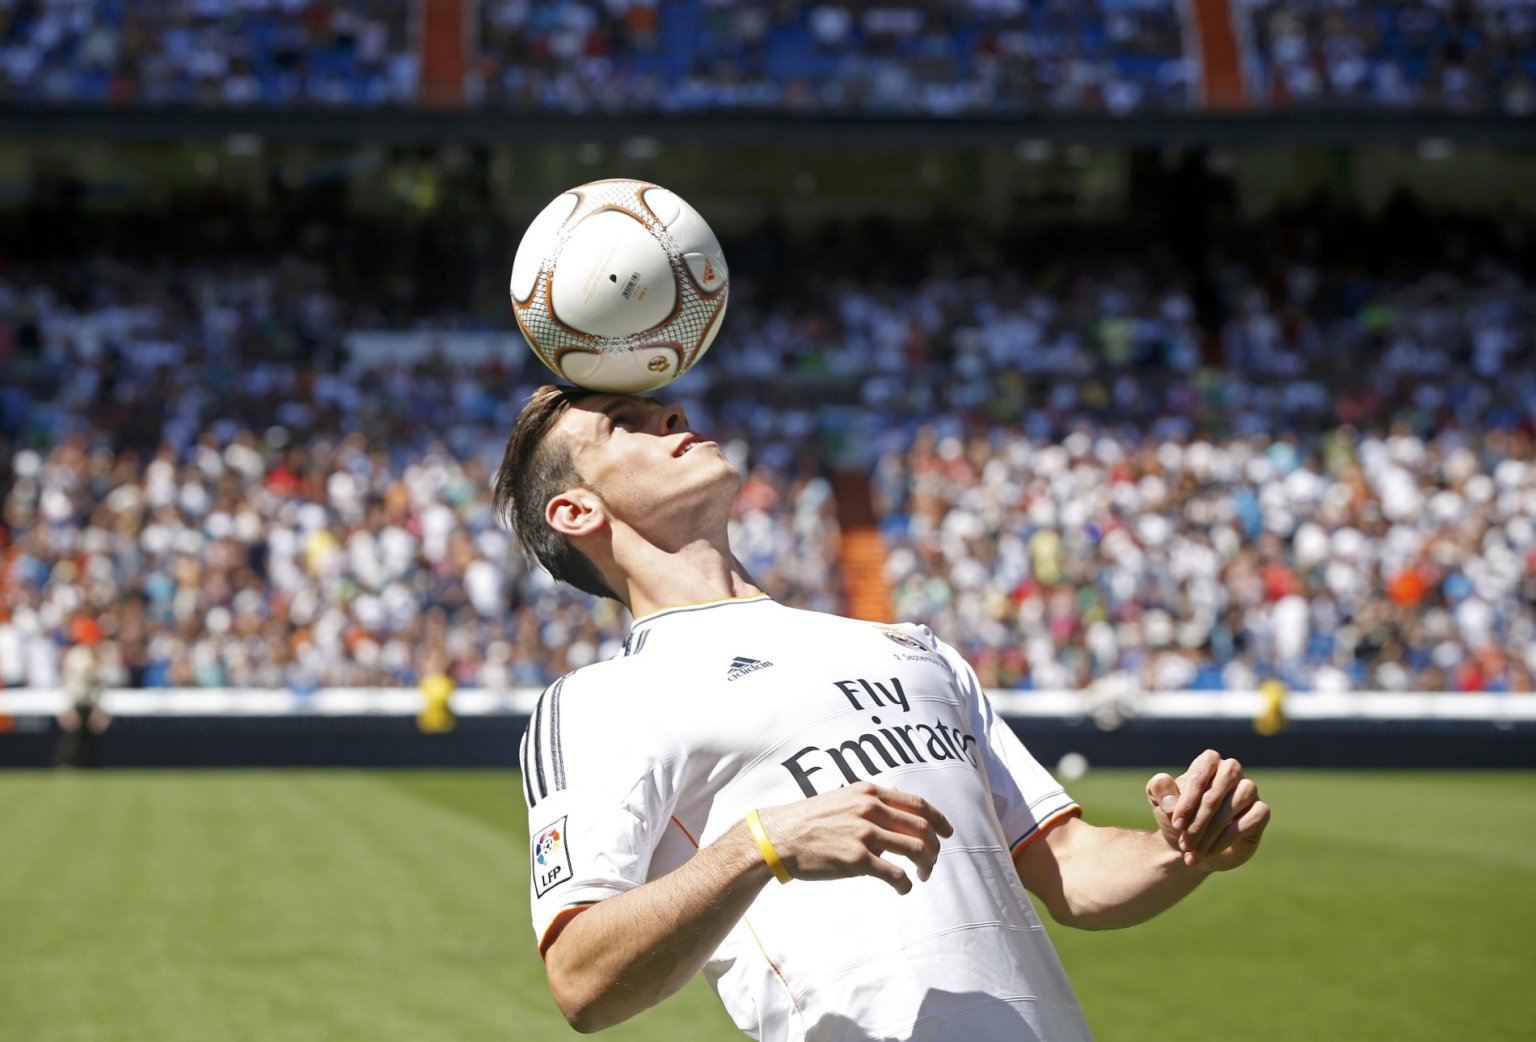 FOTO: Bale se představil fanouškům v Madridu. Do Realu bych šel i za jediný cent, řekl - Hospodářské noviny (HN.cz)